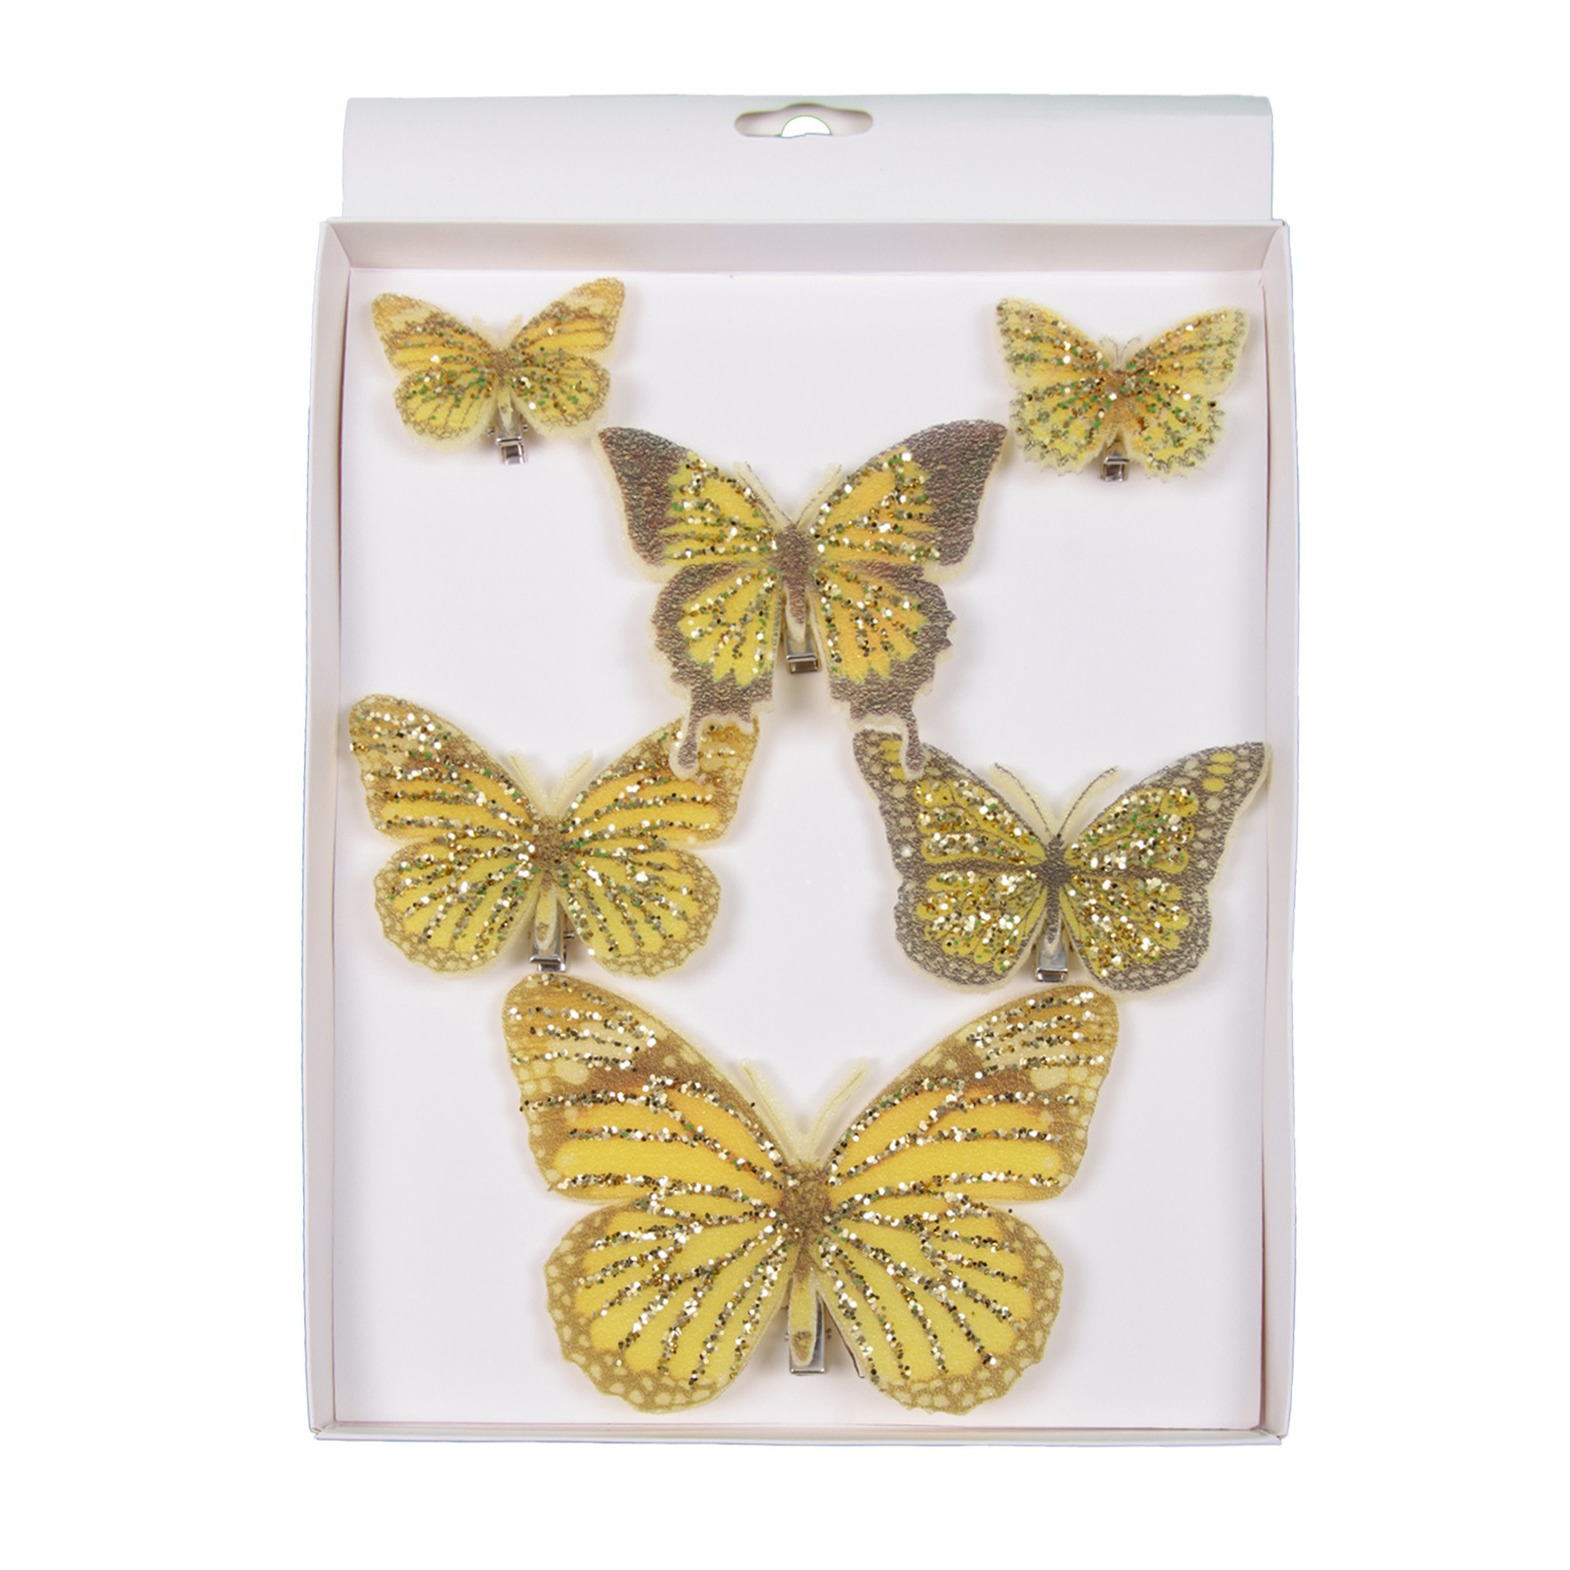 6x stuks decoratie vlinders op clip goud/geel 5, 8 en 12 cm